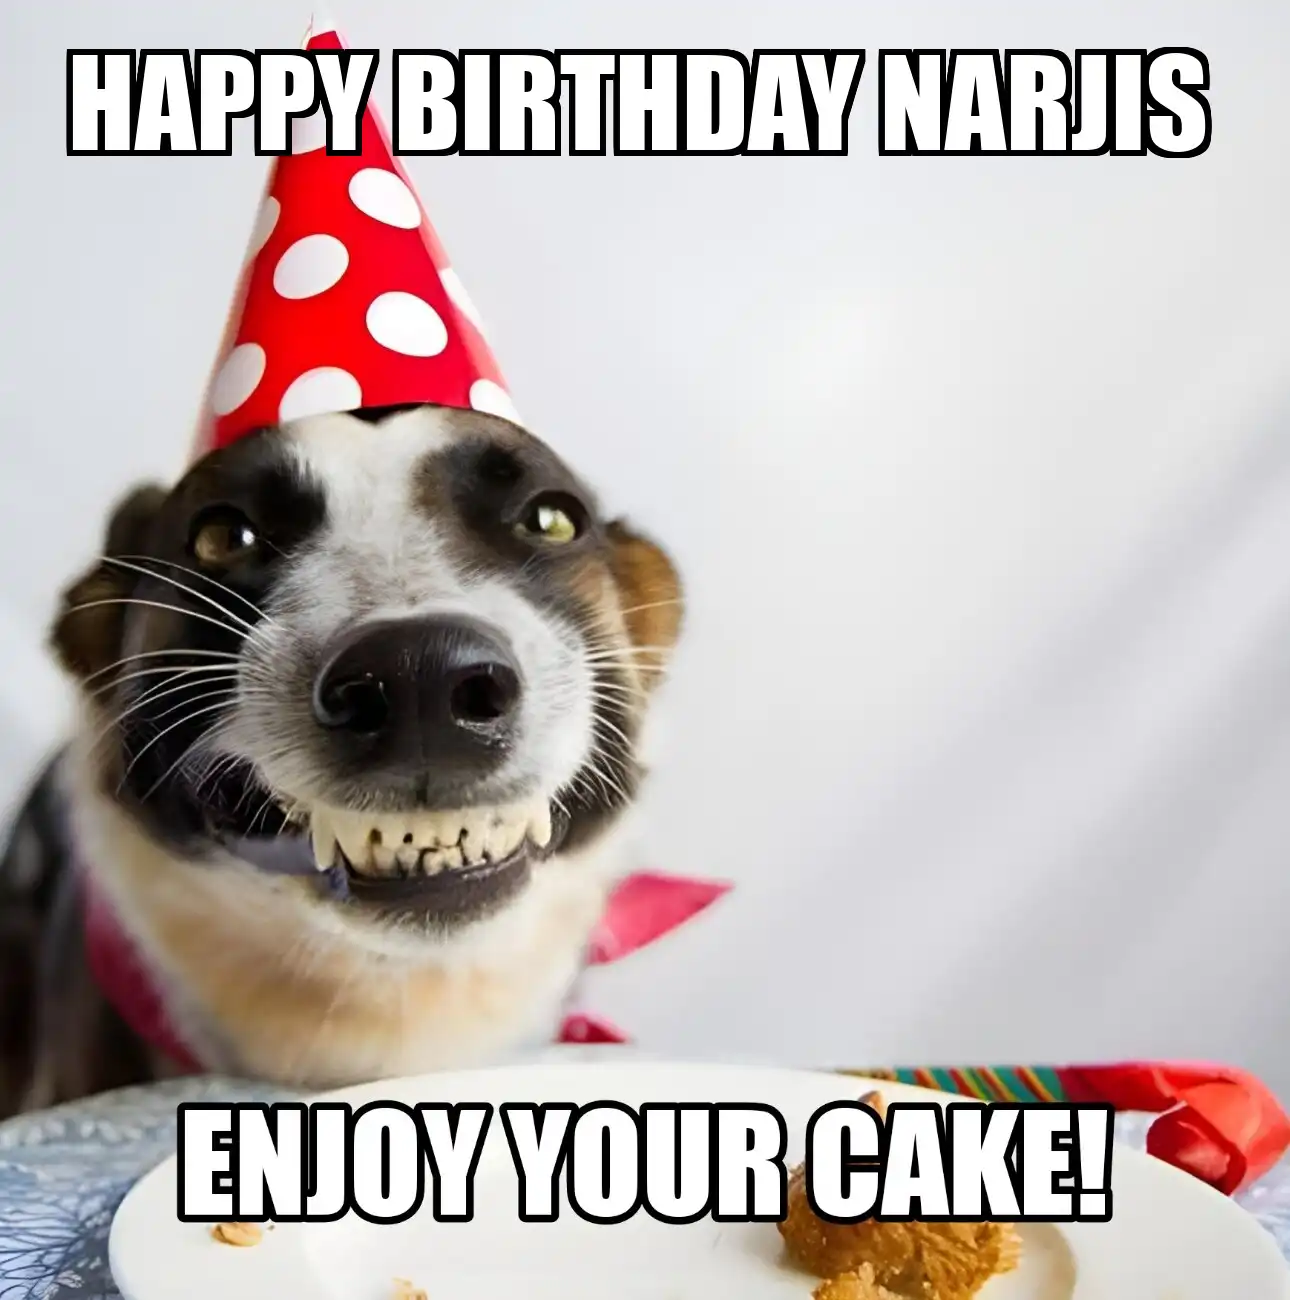 Happy Birthday Narjis Enjoy Your Cake Dog Meme